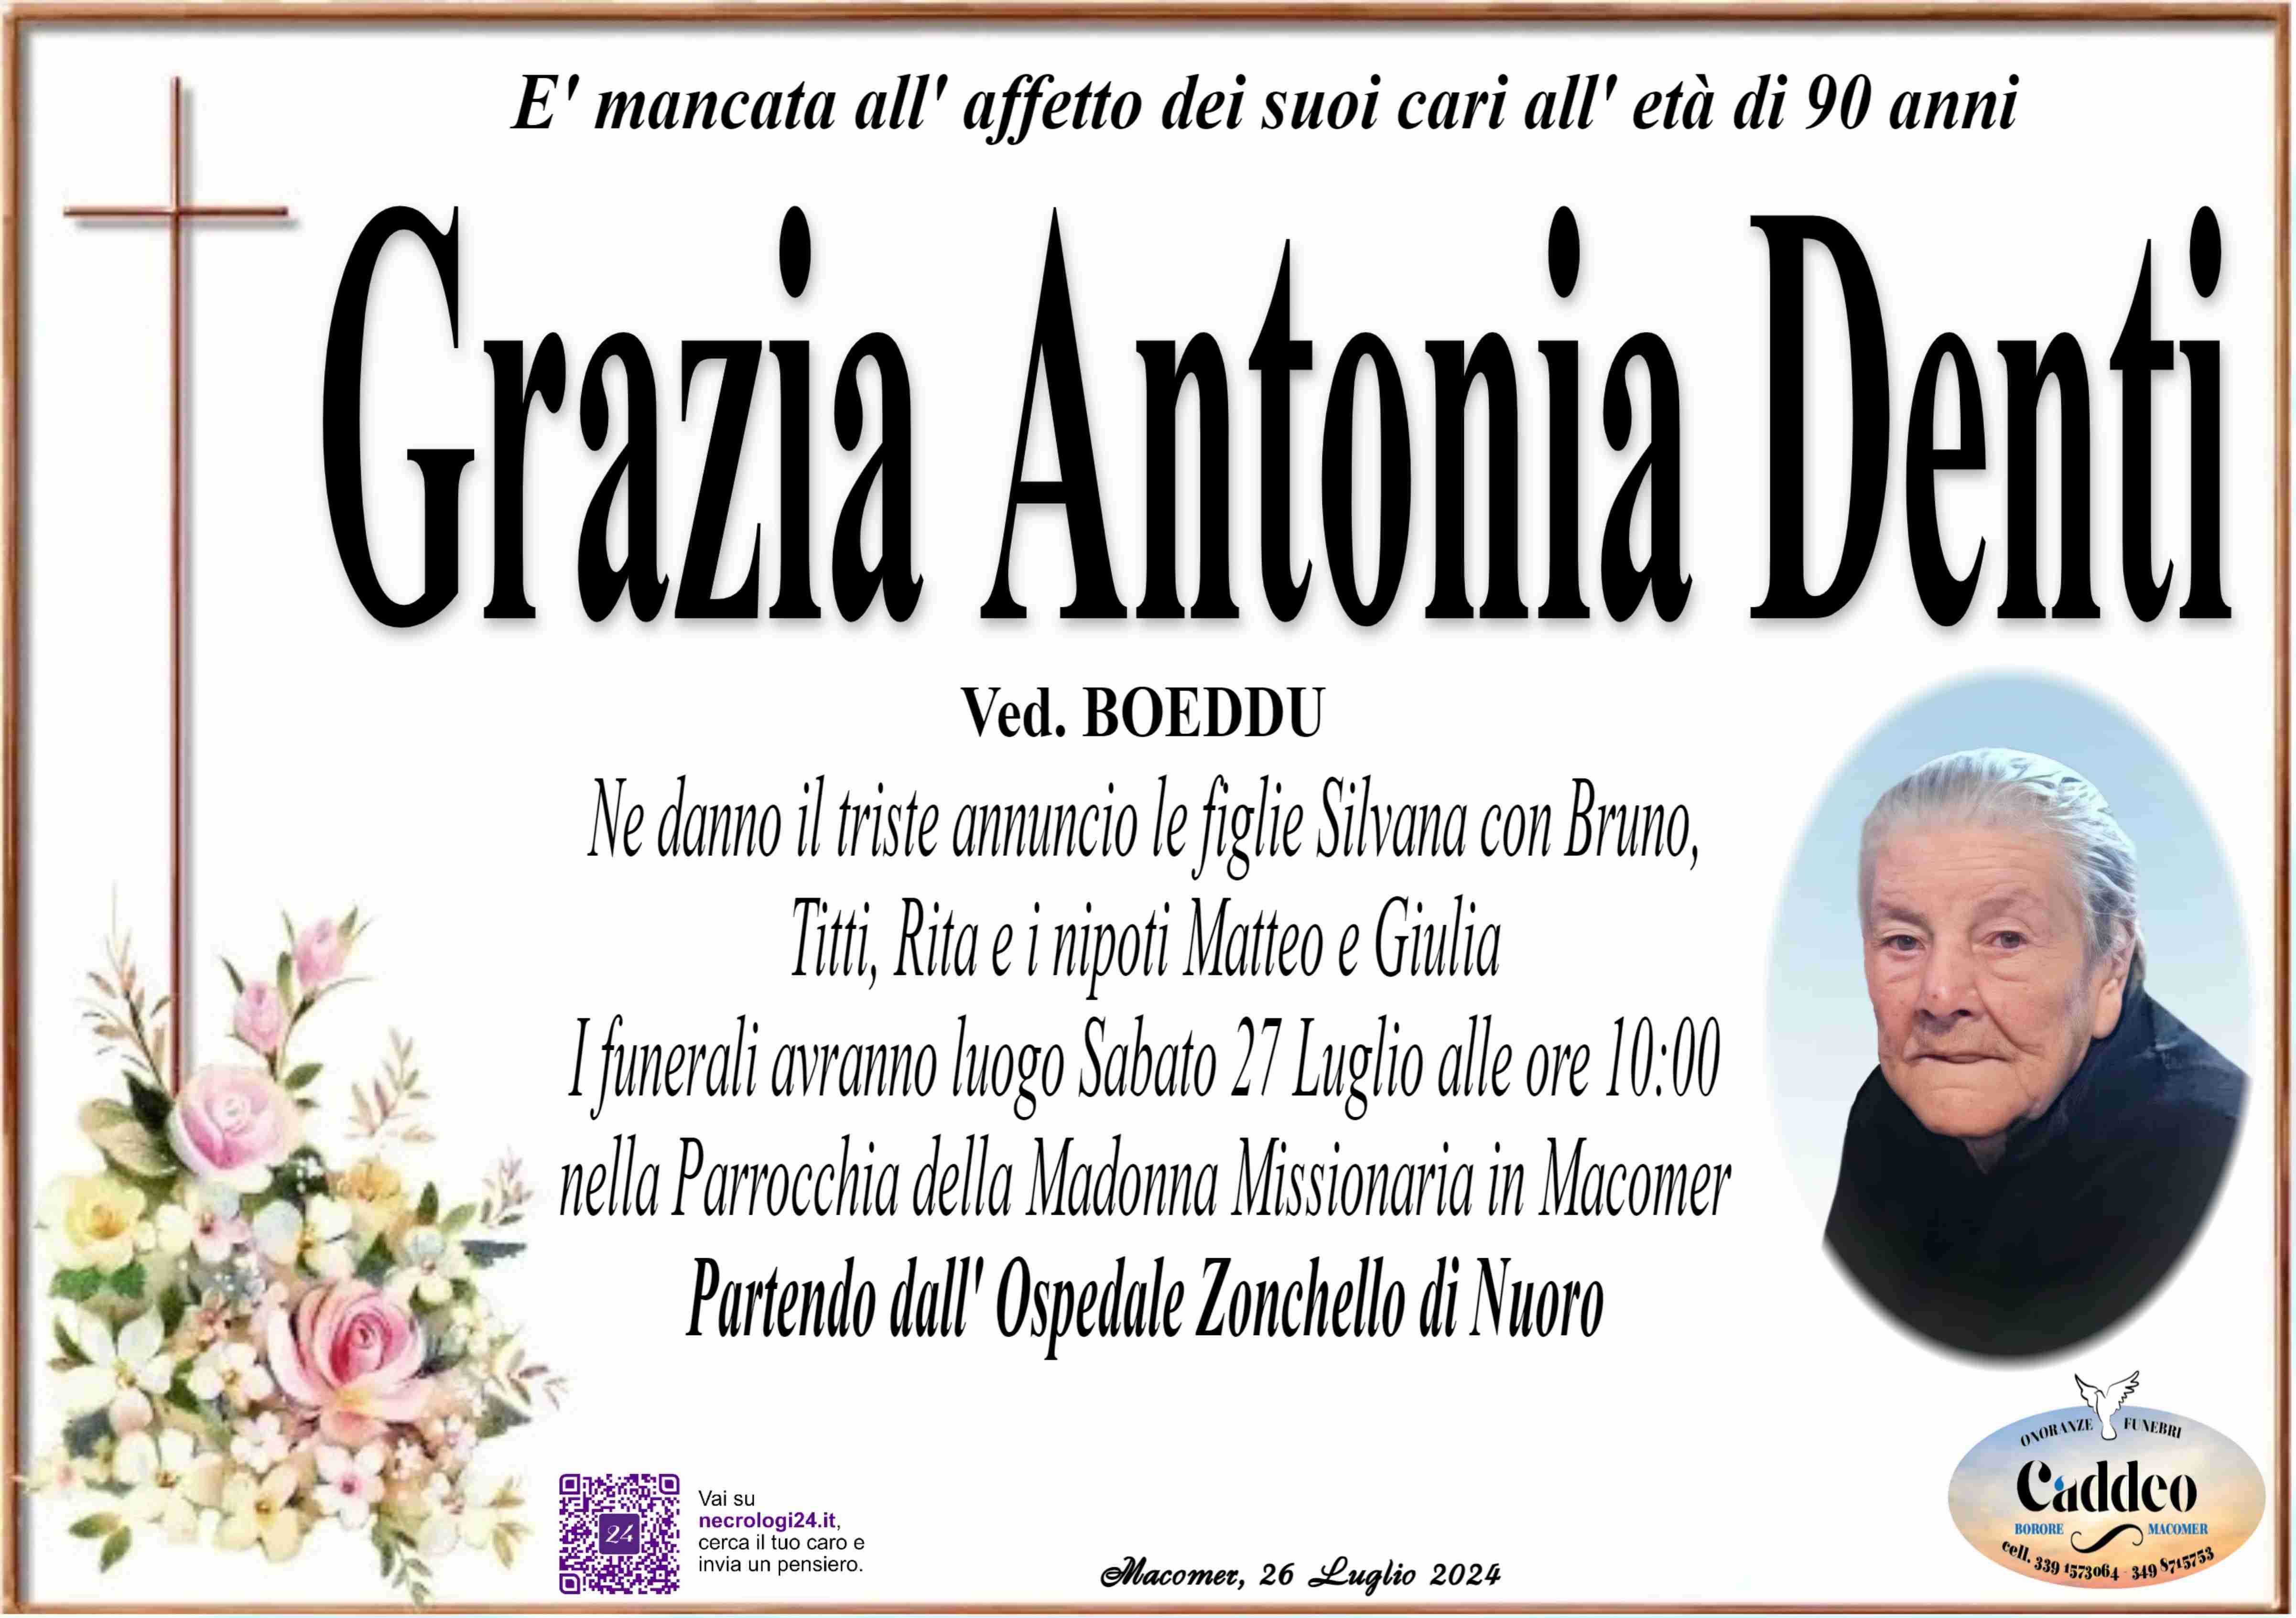 Grazia Antonia Denti